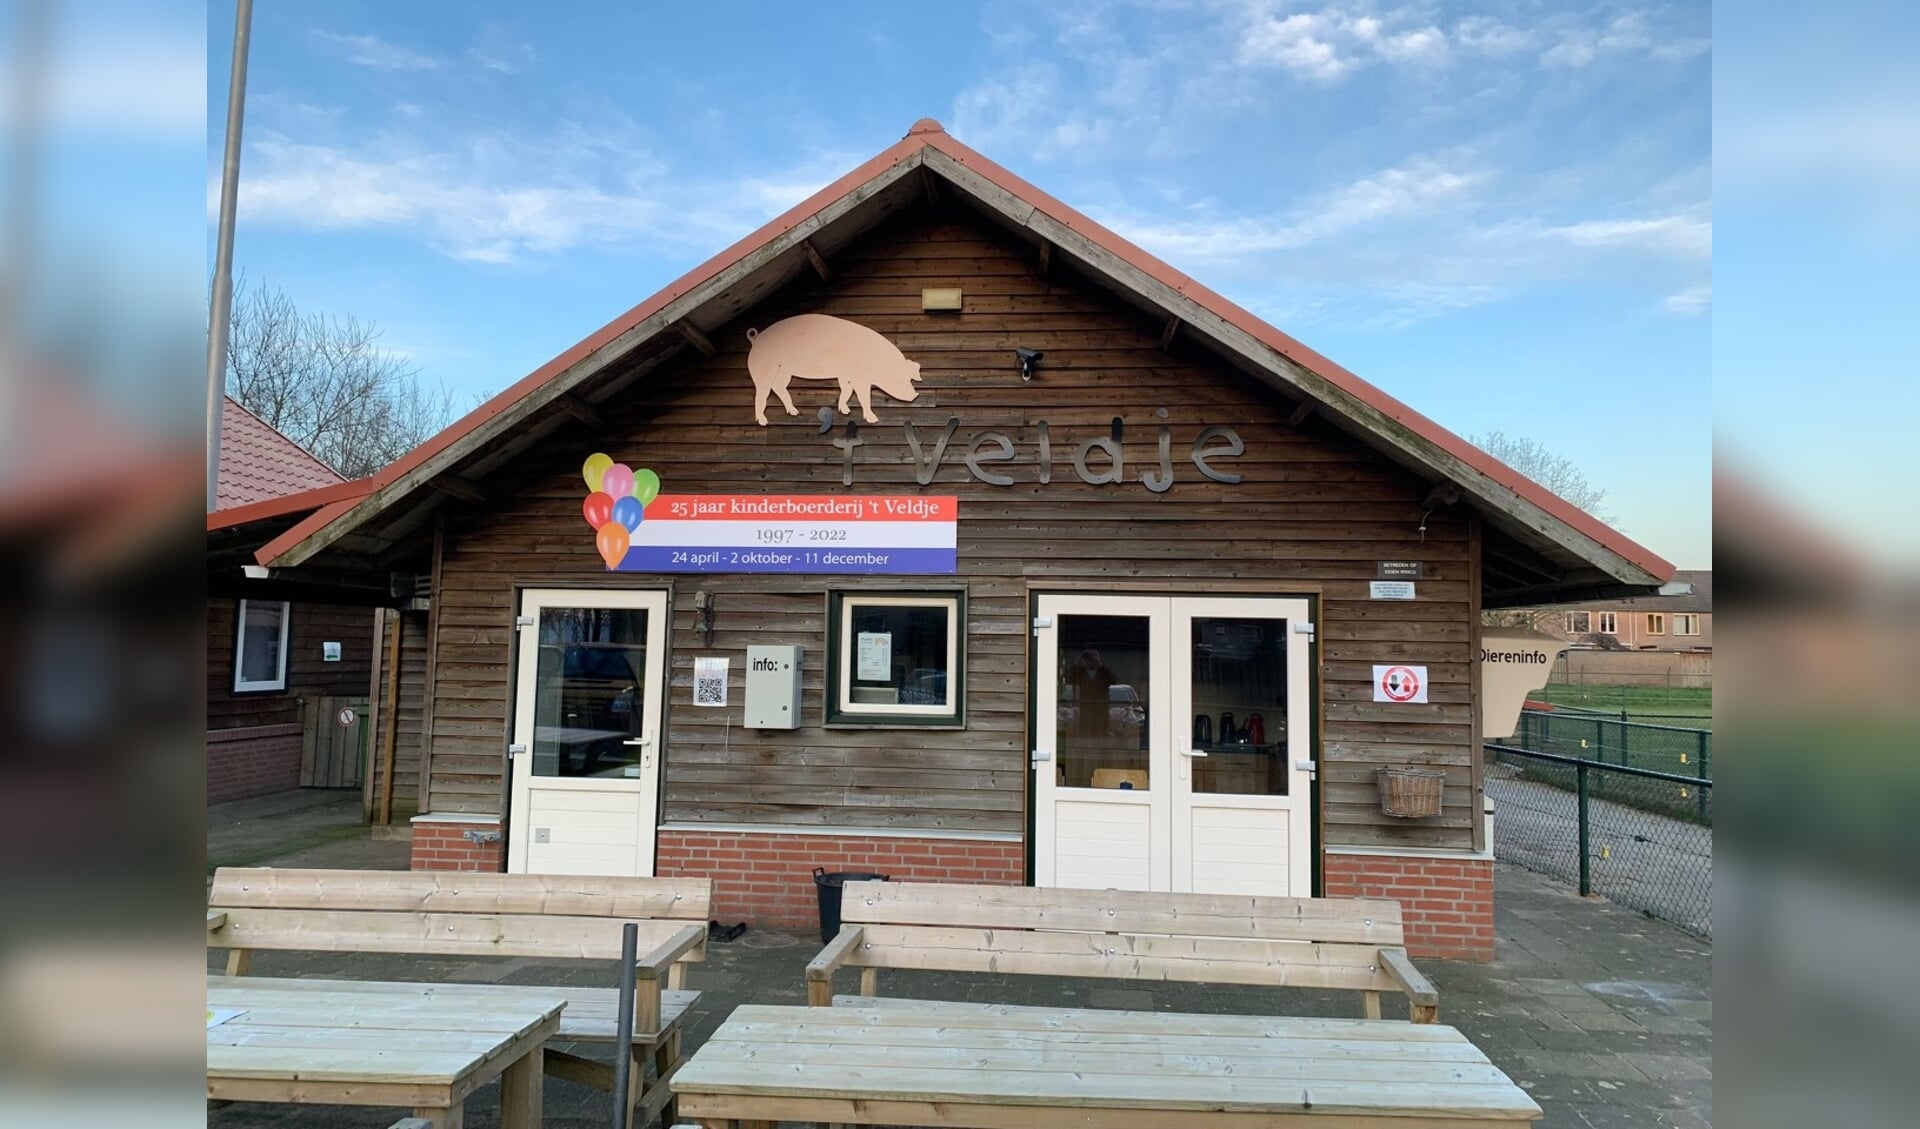 Kinderboerderij ‘t Veldje aan de Abraham Kuyperborch 2 in Rosmalen trapt het jubileumjaar op zondag 24 april af met een feestmiddag.